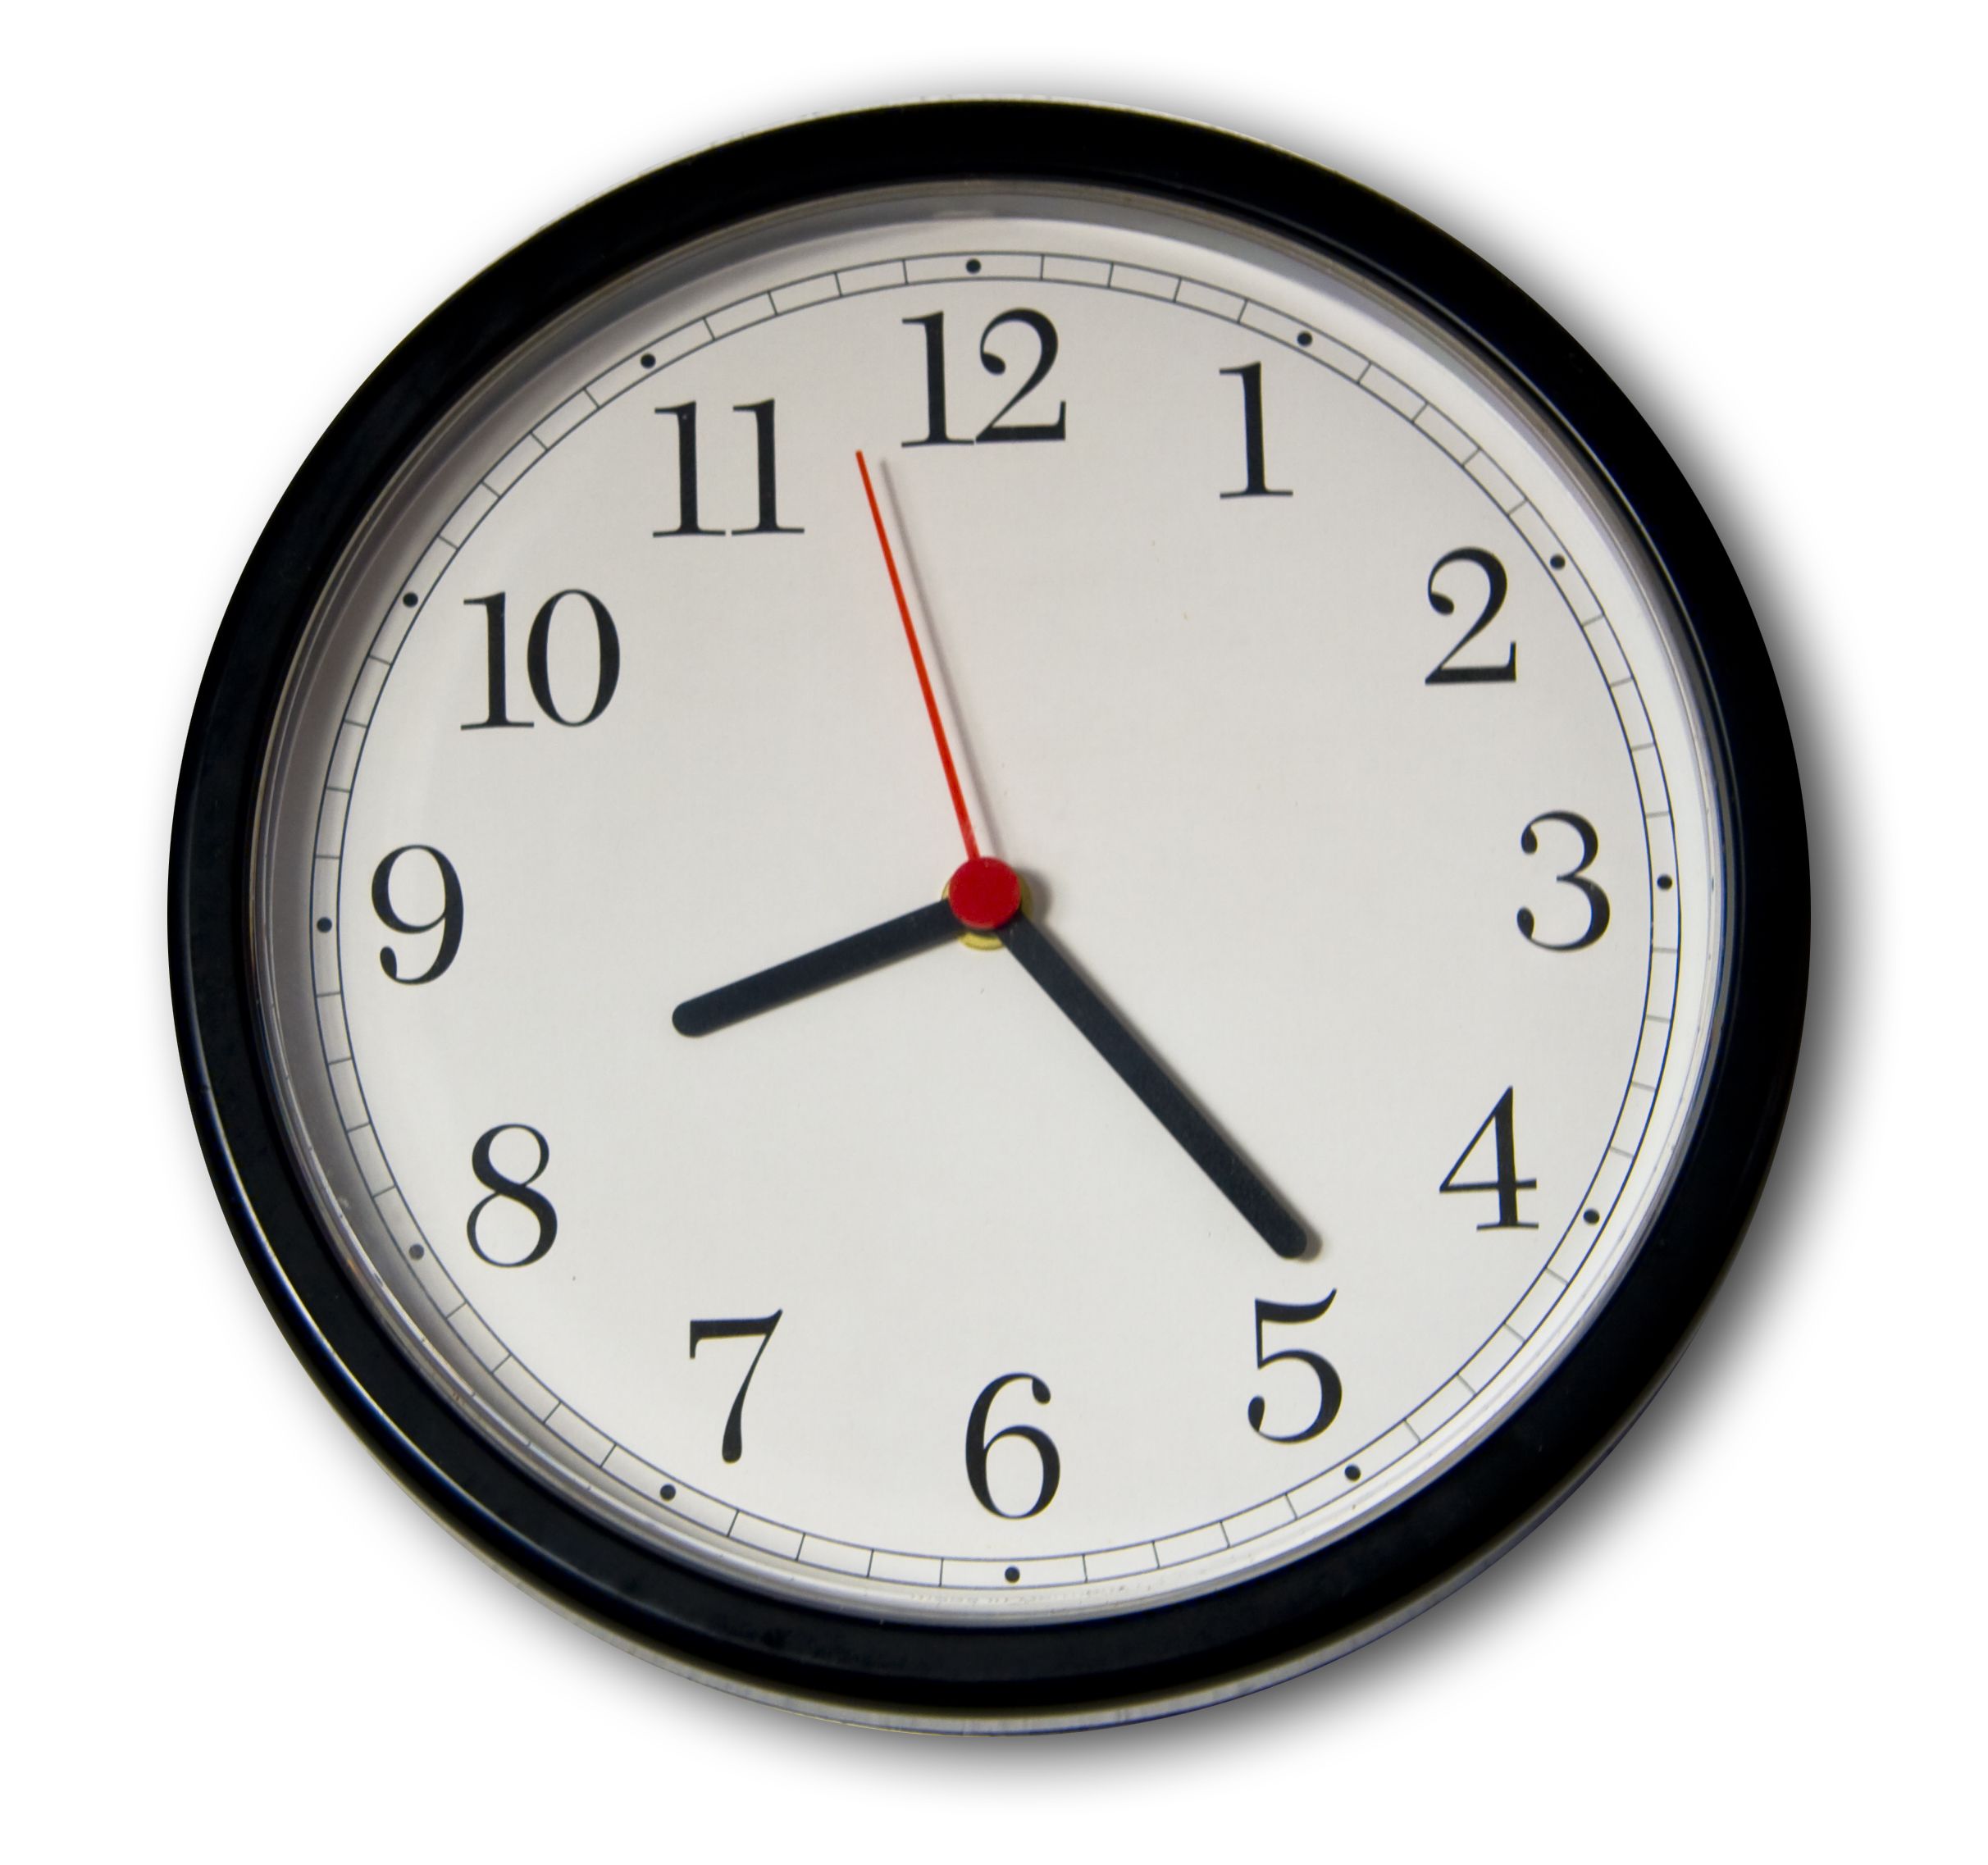 Часы показывающие разное время. Часы со стрелками. Часы 8 часов. Изображение часов. Часы со стрелкой.